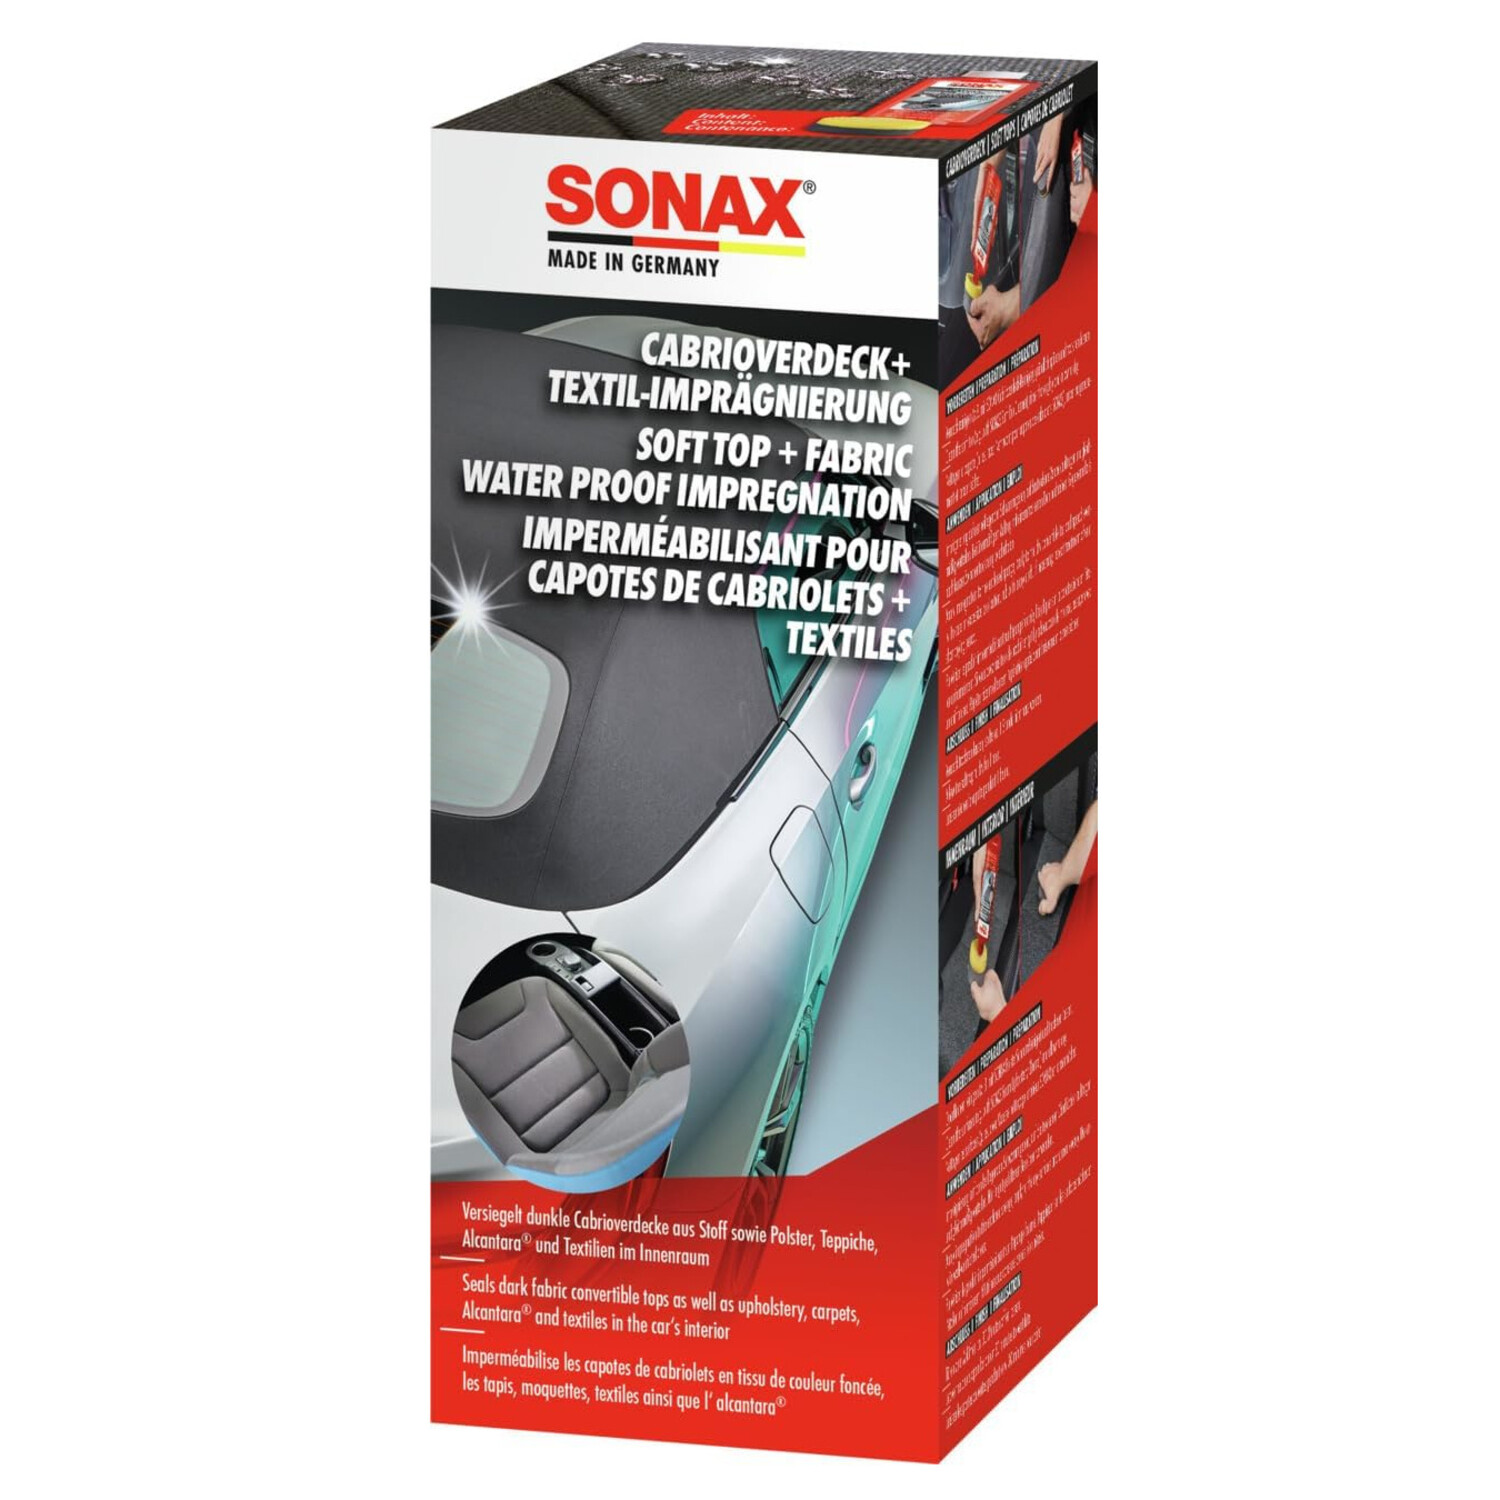 Sonax Cabrioverdeck- & Textil Imprägnierung 250ml - Waschhelden, 20,99 €